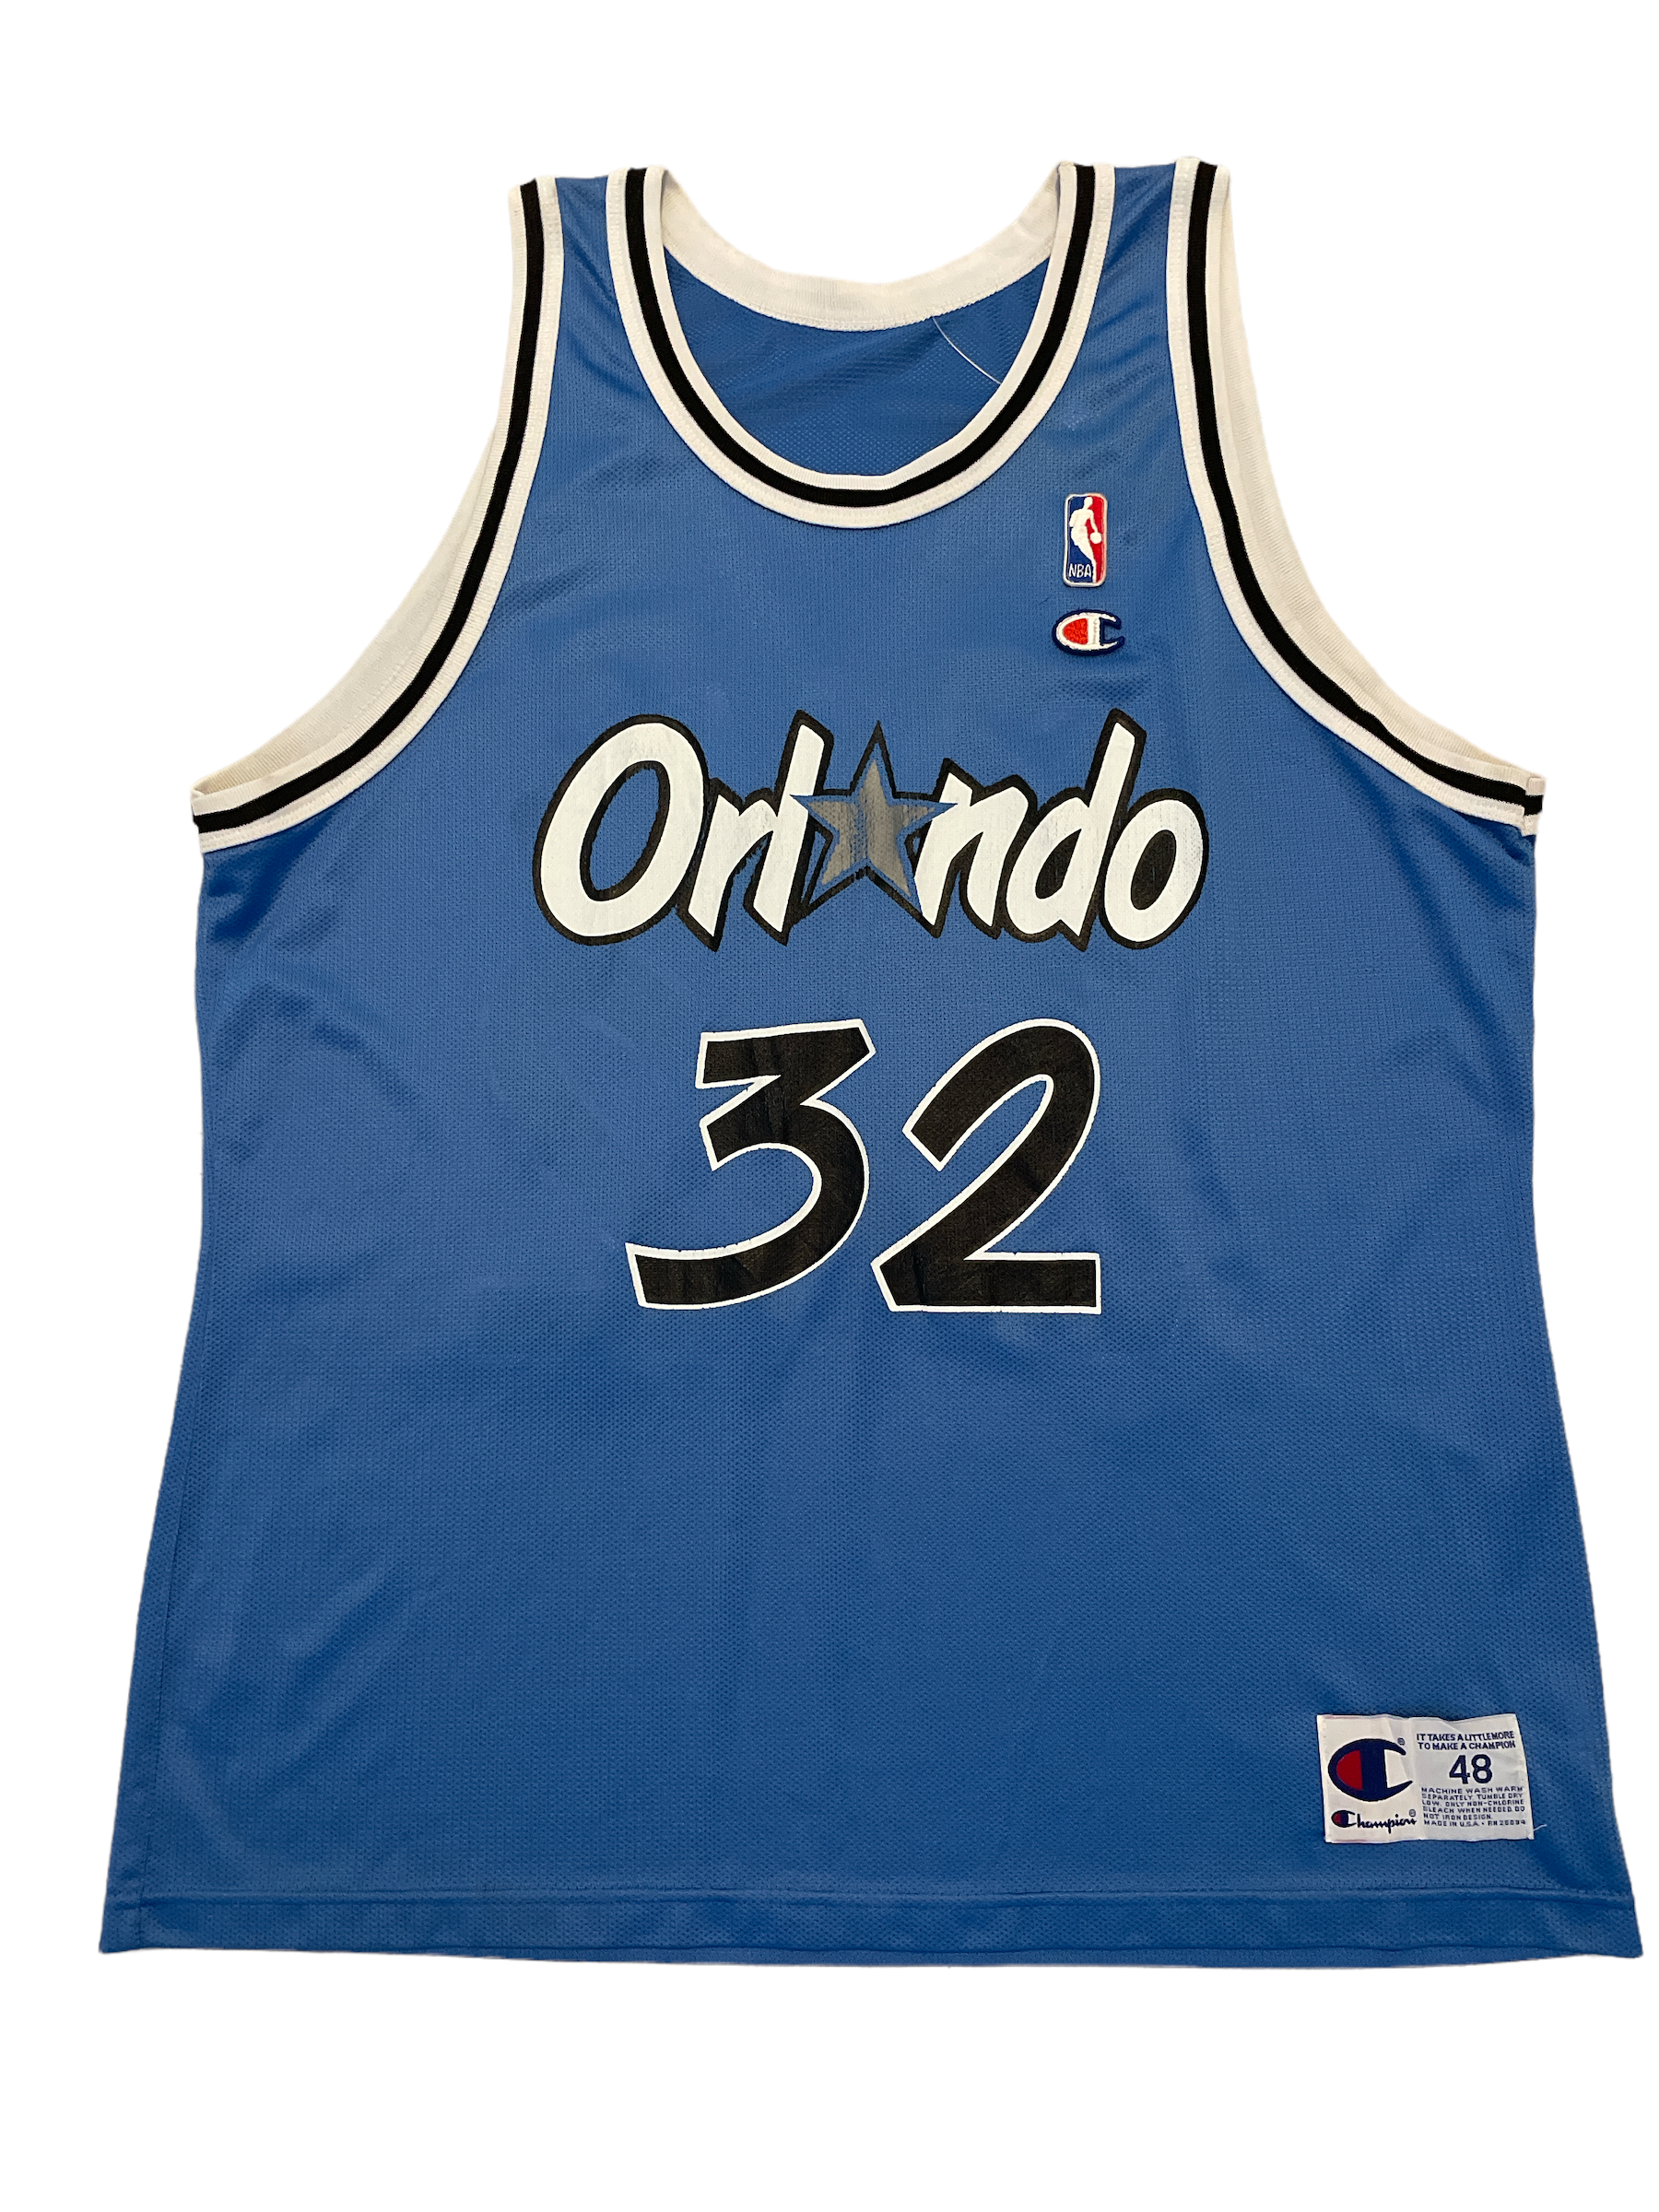 NBA Orlando Magic Basketball Jersey Singlet Spalding No. 32 O'Neal Size Sml